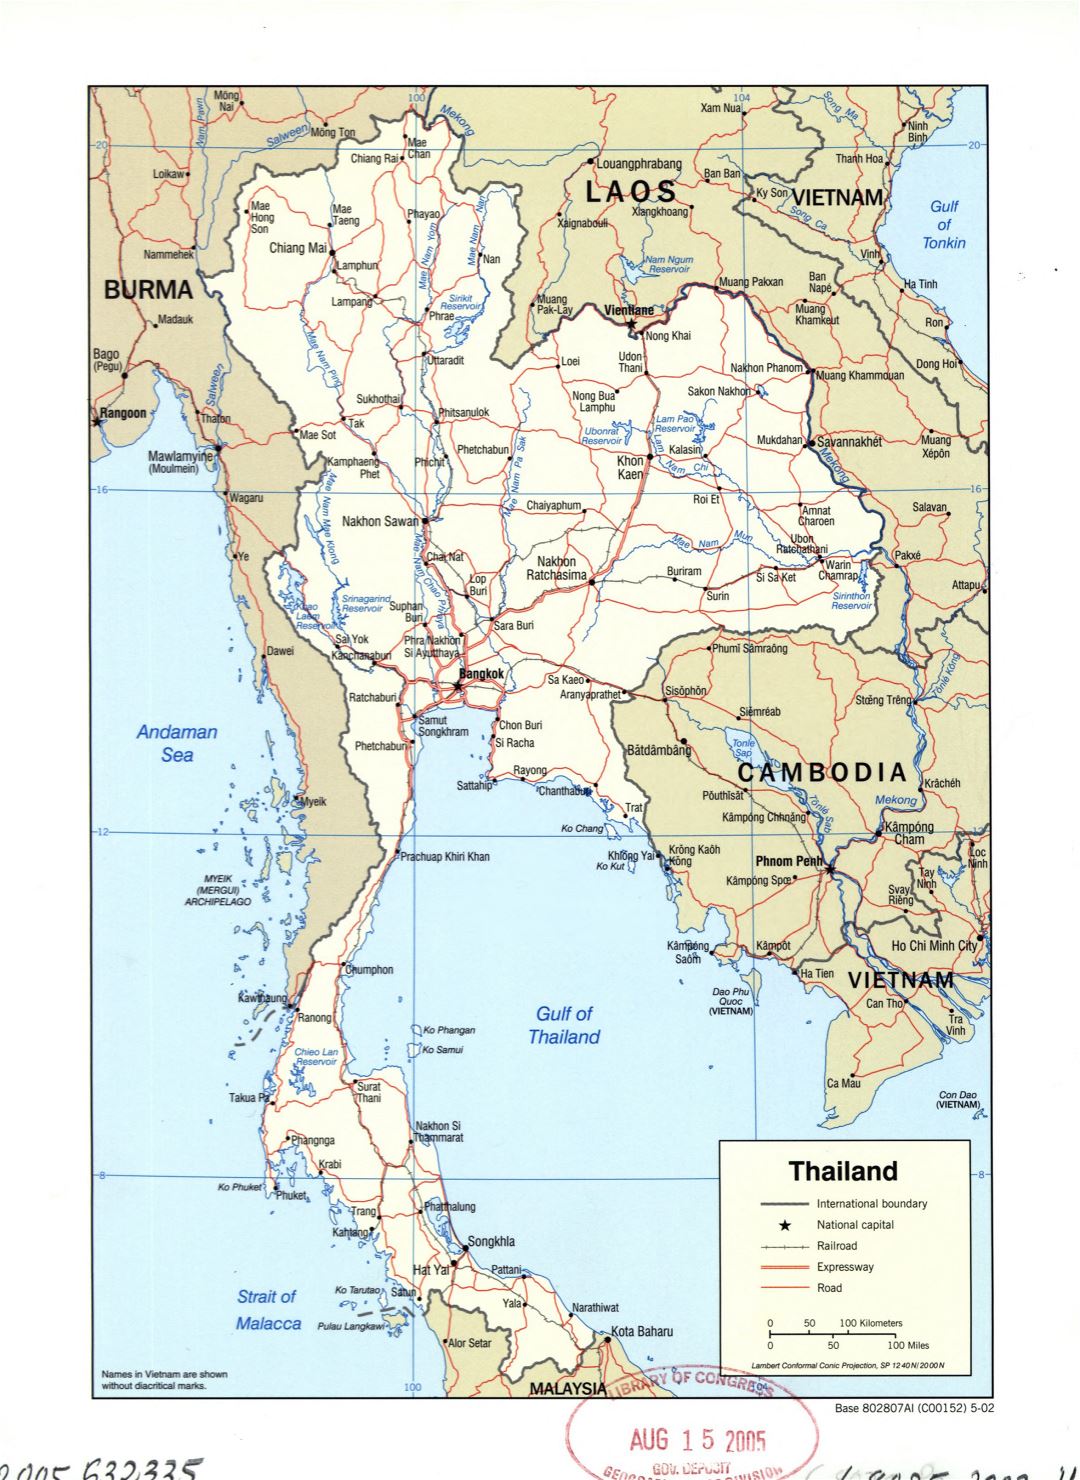 Grande detallado mapa político de Tailandia con carreteras, ferrocarriles y principales ciudades - 2002